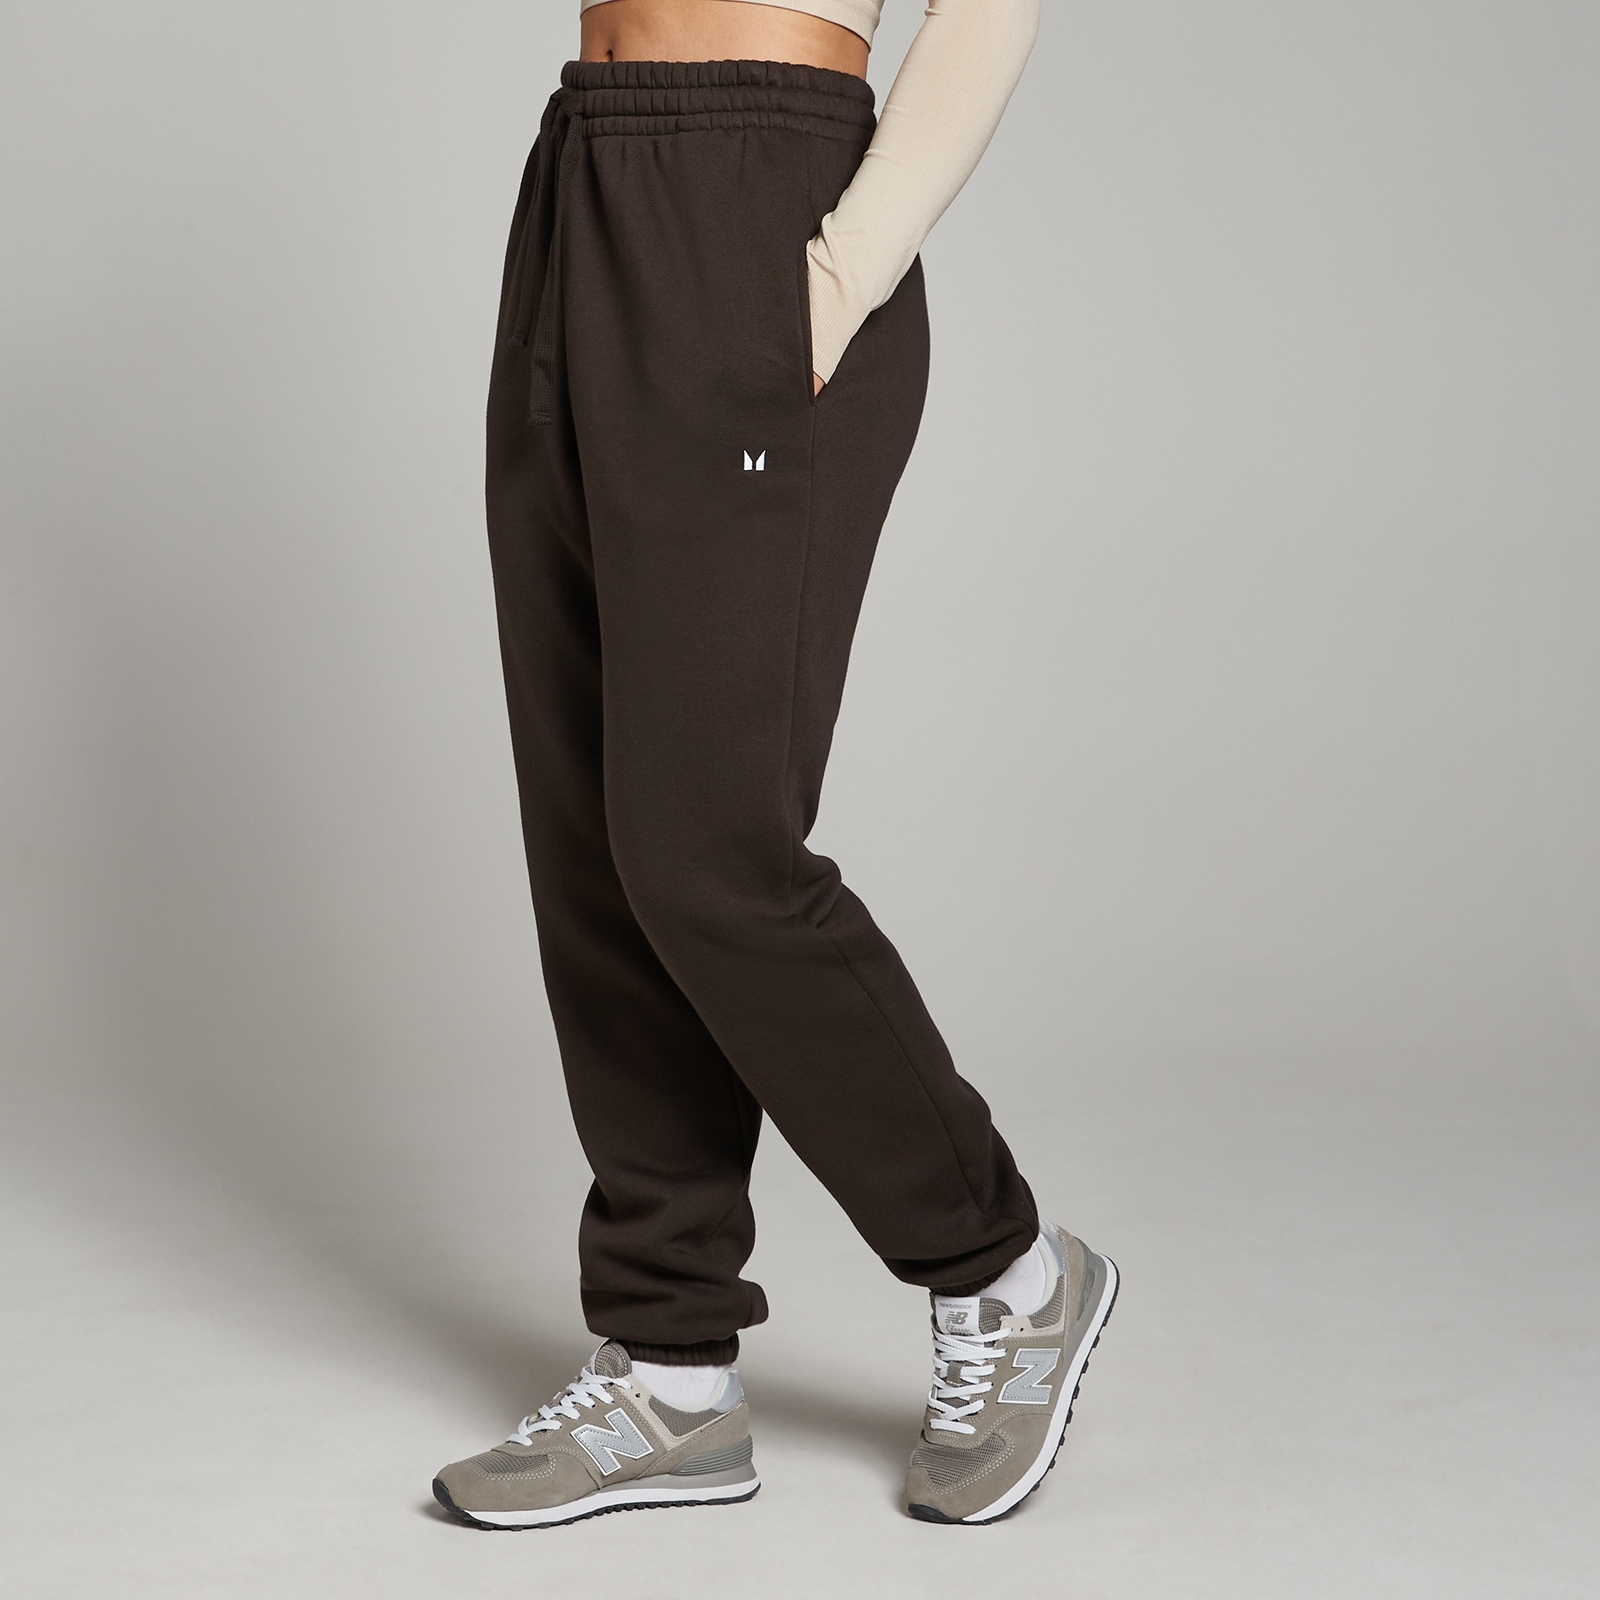 Image of Pantaloni da jogging MP Basic da donna - Caffè - XL